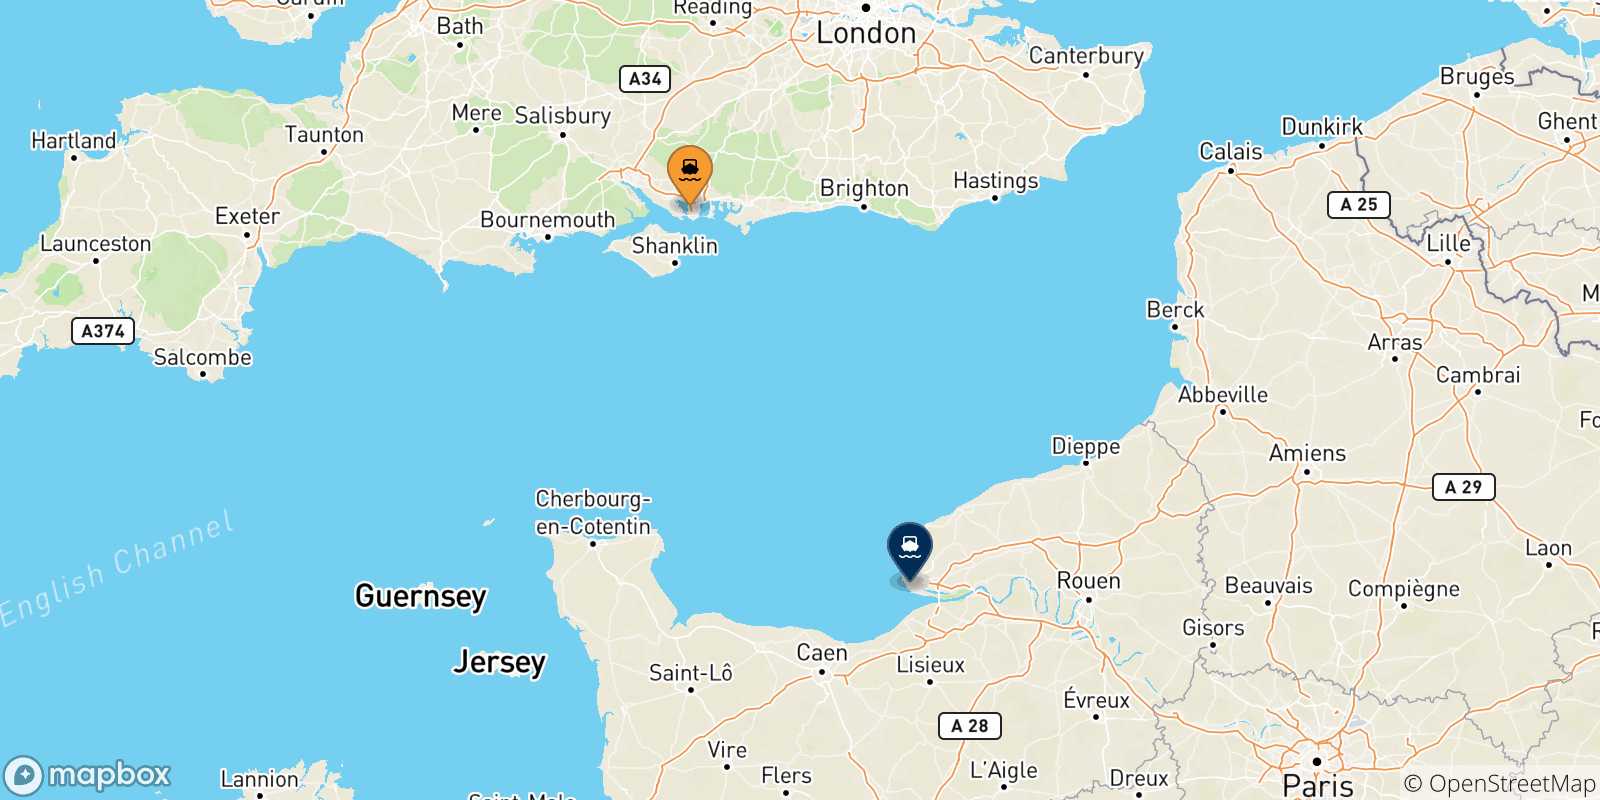 Mappa delle possibili rotte tra il Regno Unito e Le Havre